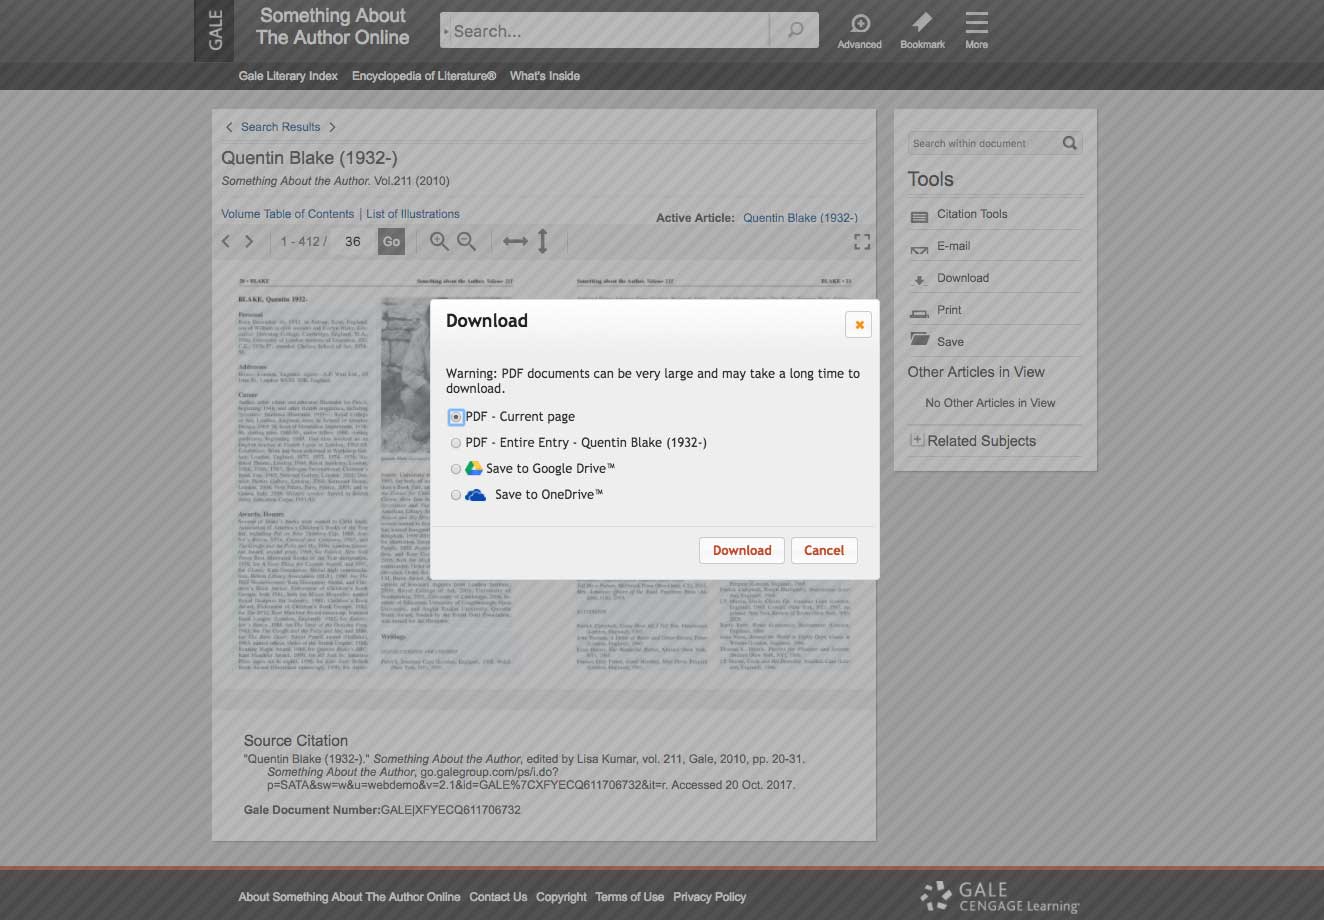 整合微软工具，便于研究者直接将文献保存在OneDrive中。